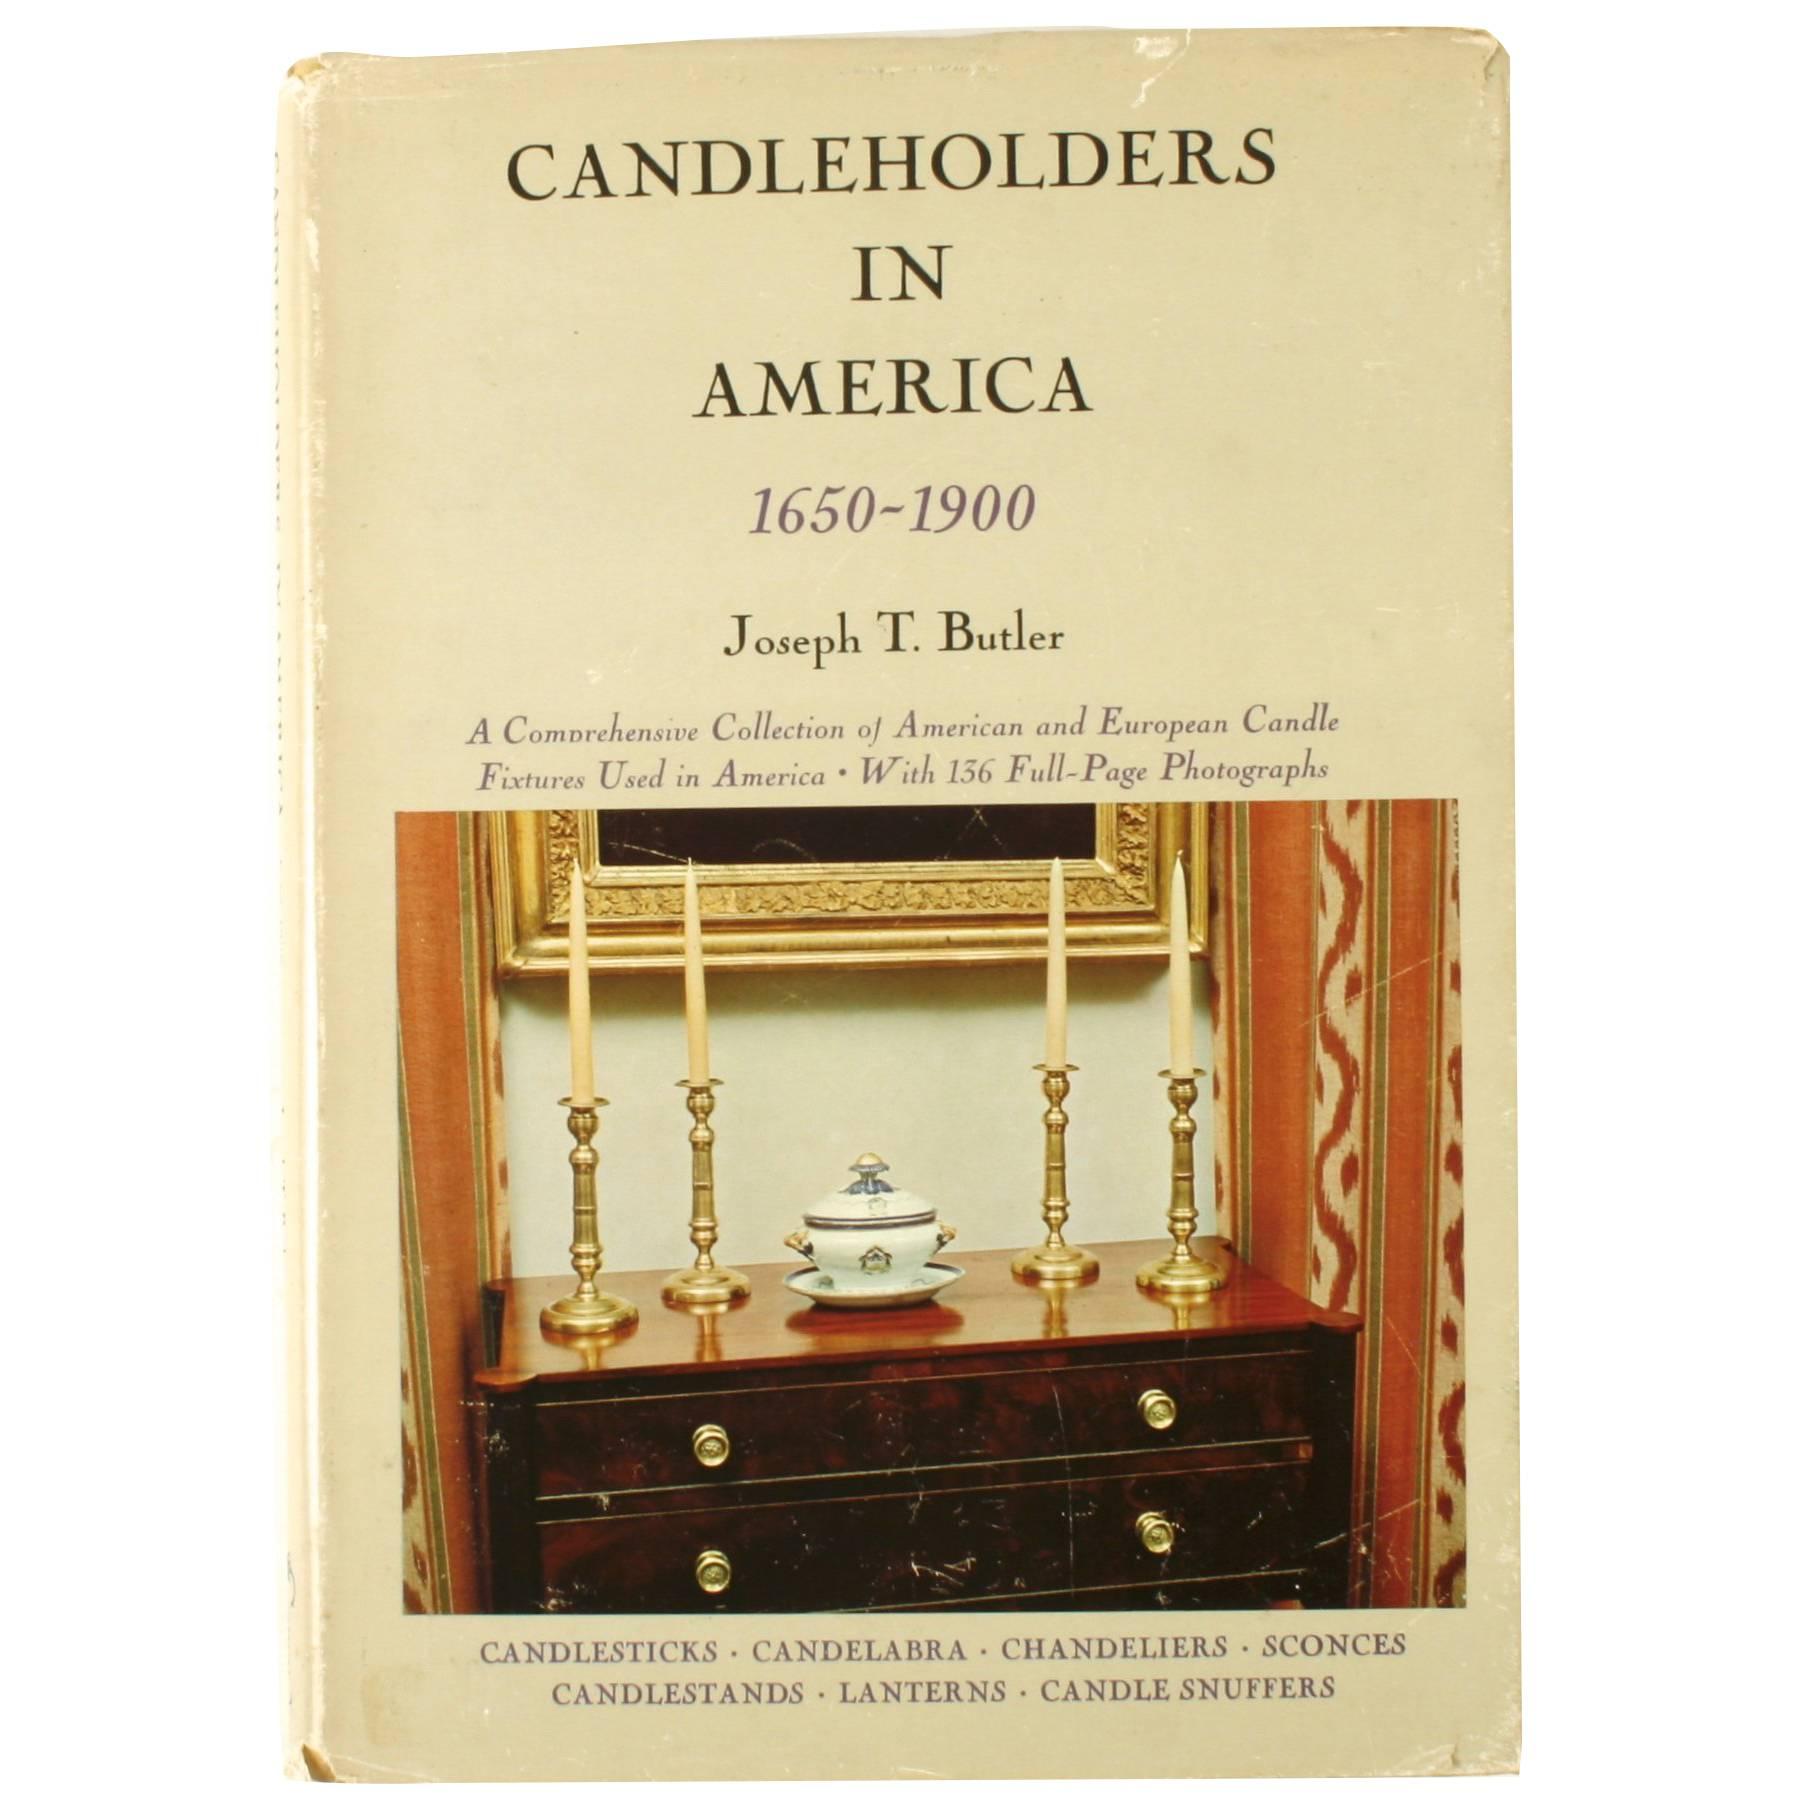 Kerzenständer in Amerika von Joseph T. Butler 1650-1900, 1. Auflage